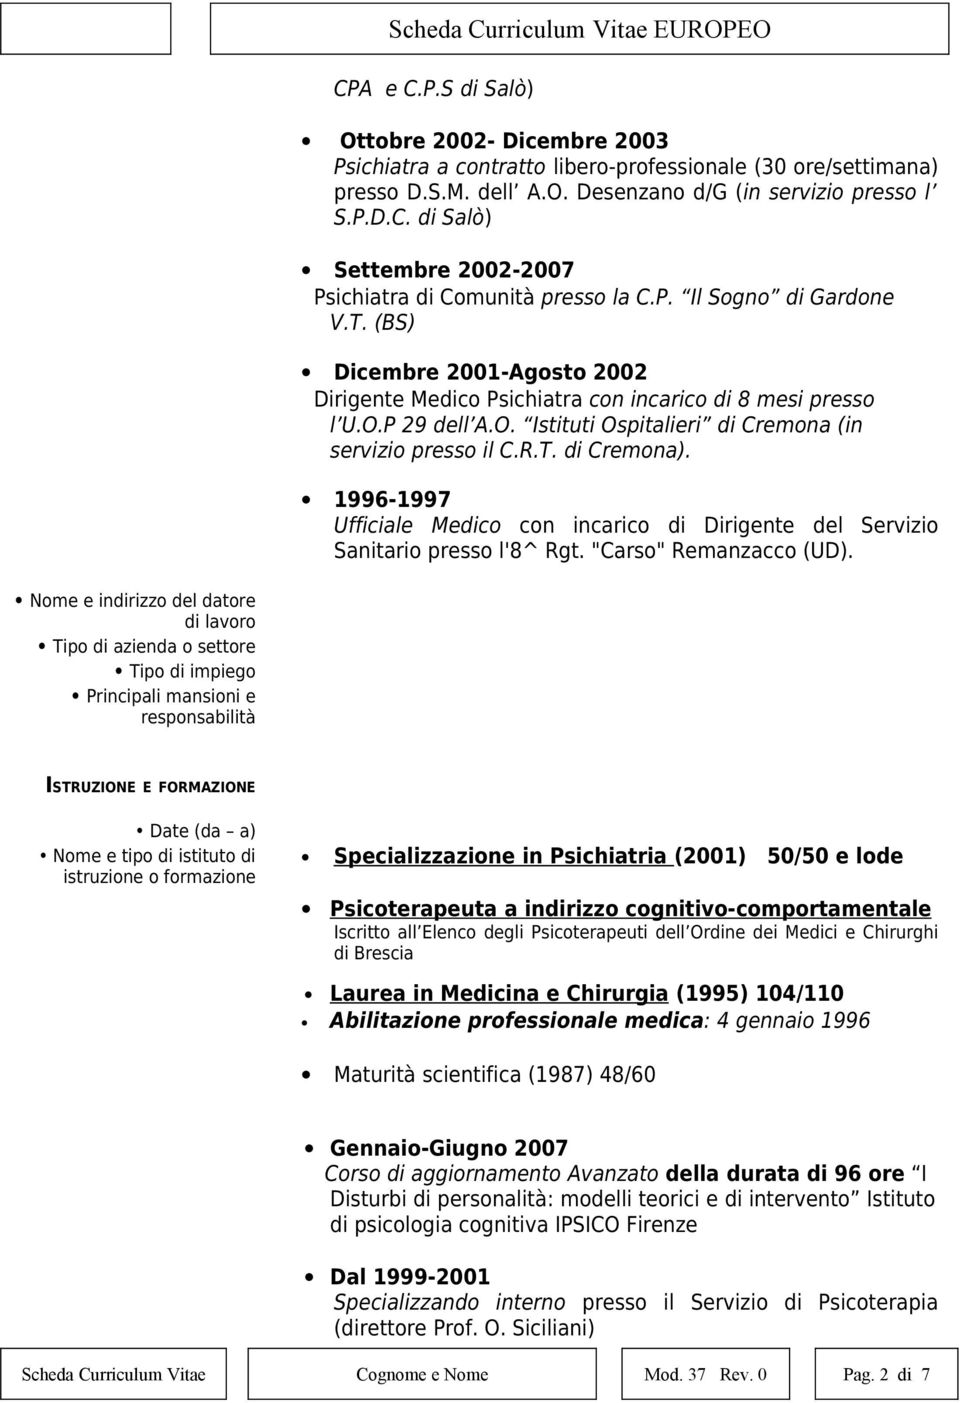 1996-1997 Ufficiale Medico con incarico di Dirigente del Servizio Sanitario presso l'8^ Rgt. "Carso" Remanzacco (UD).